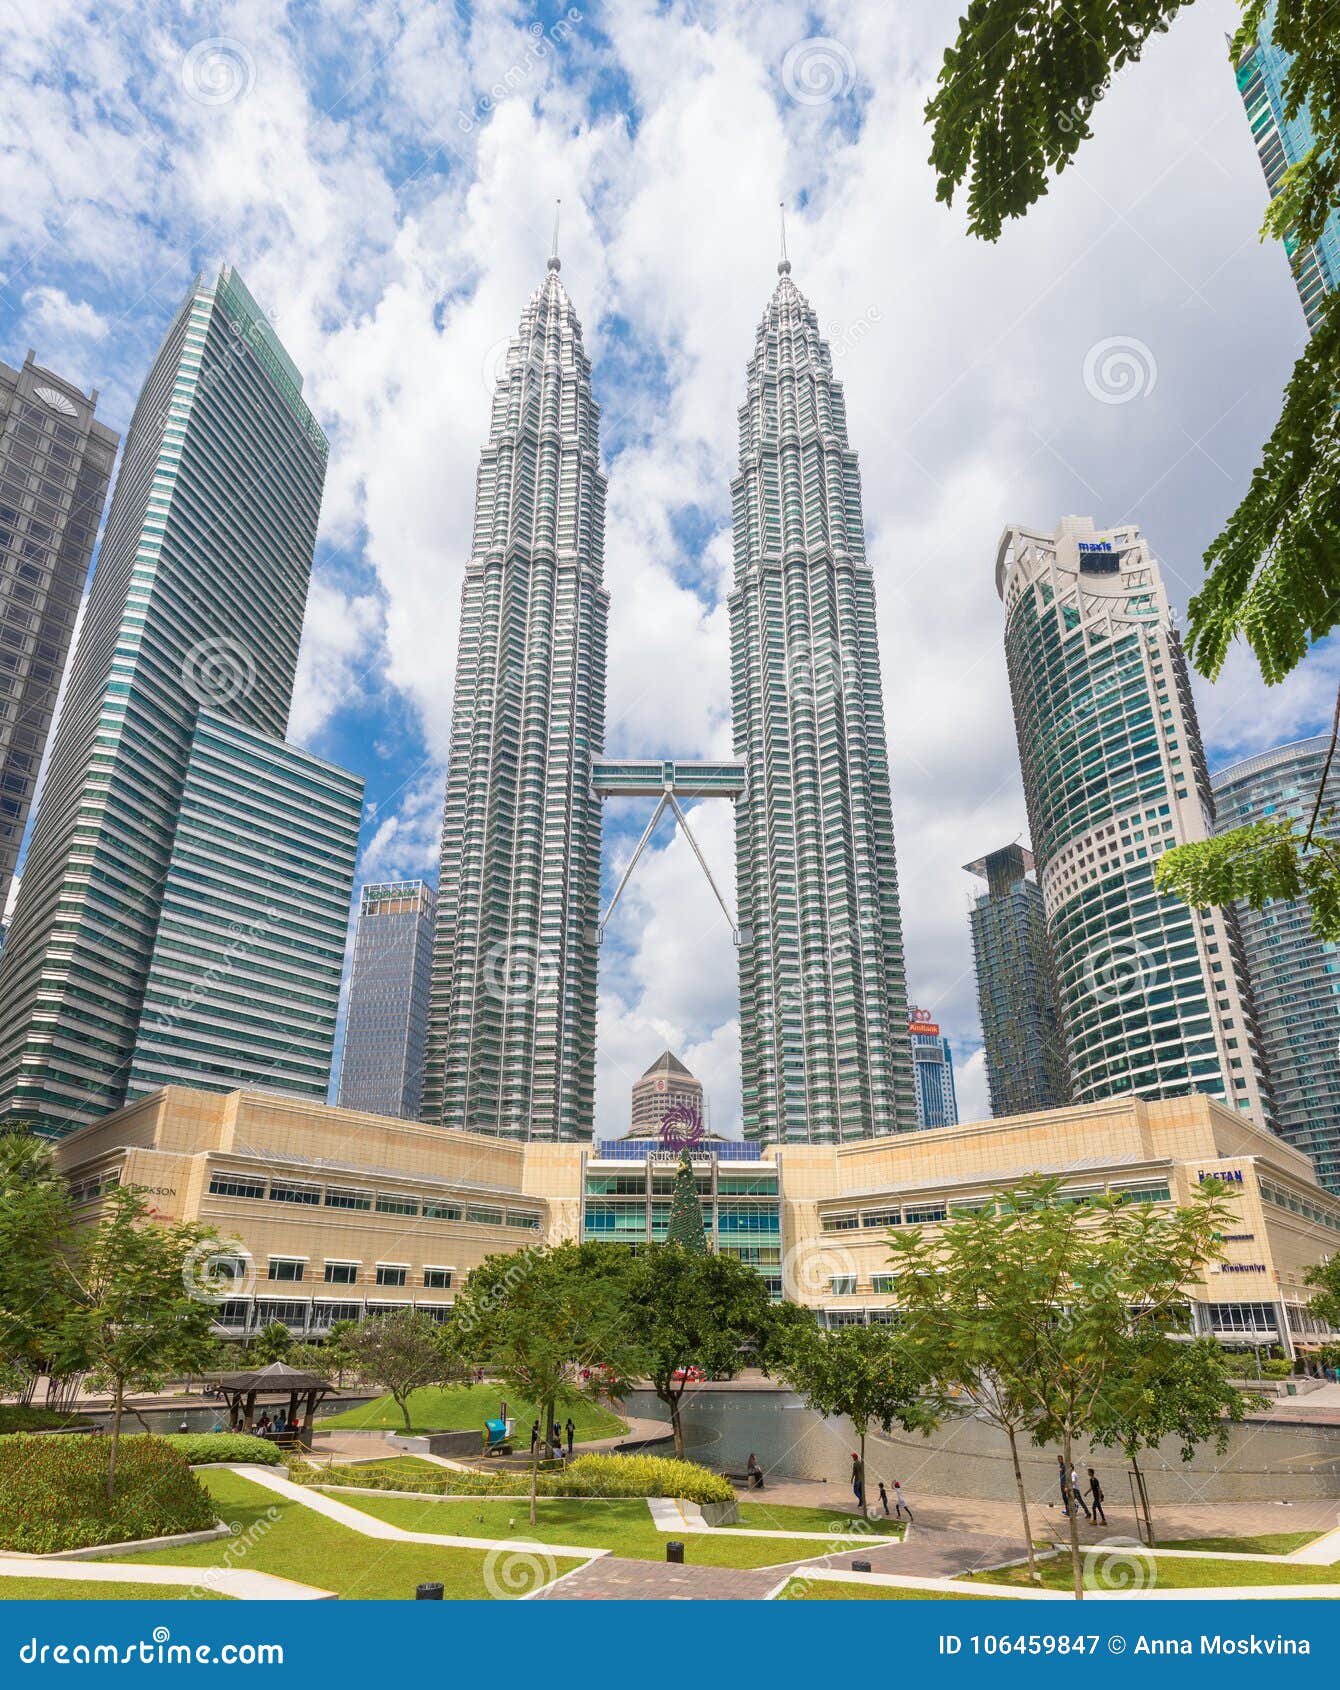 【携程攻略】吉隆坡双子塔景点,双子塔曾经是世界上最高的建筑物，尽管现在不再保留这个记录，两座高…